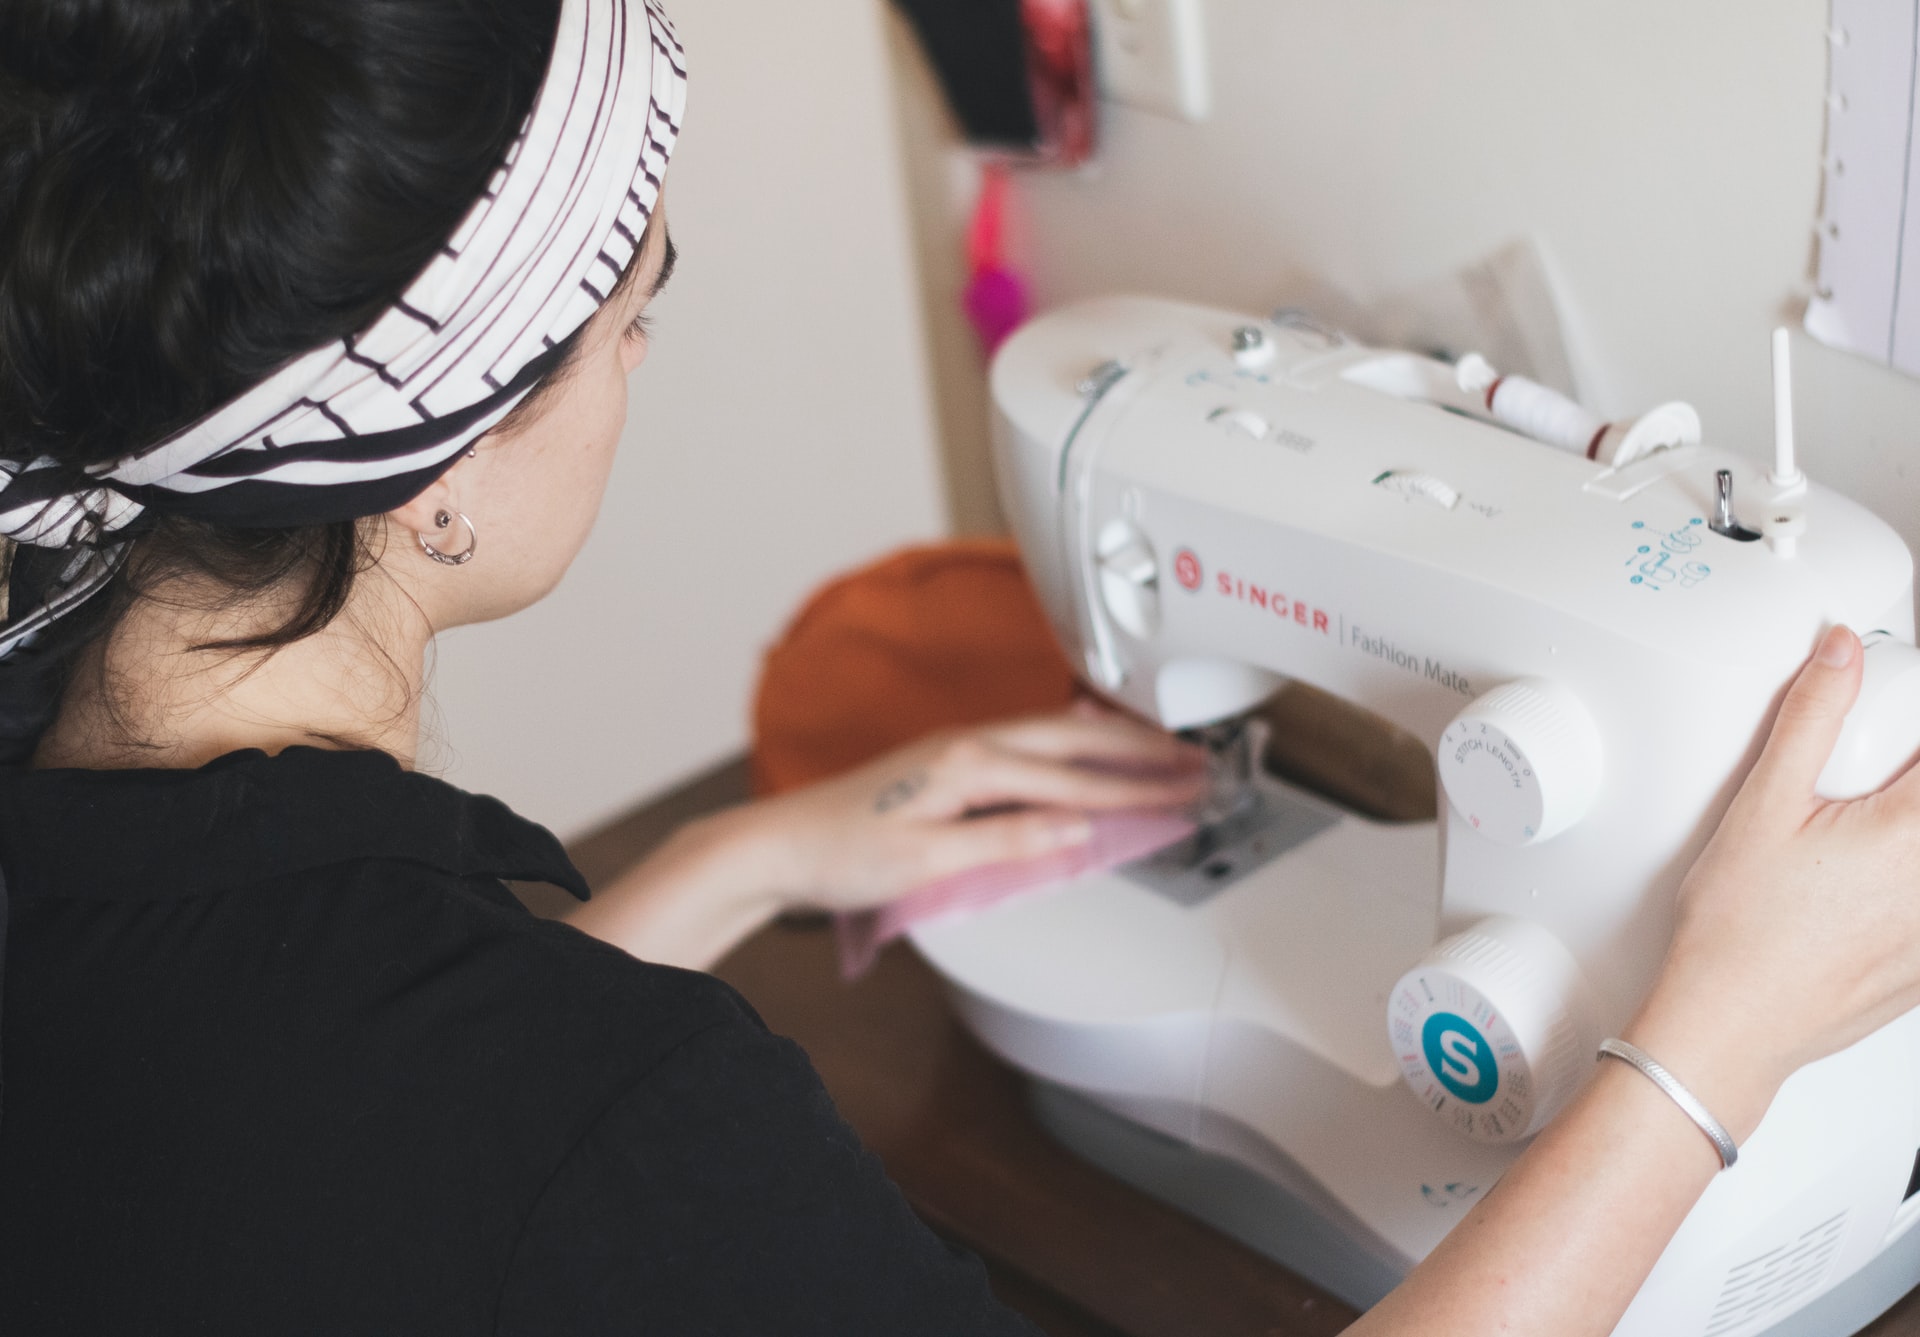 Trabalhar com moda: a imagem mostra uma mulher trabalhando em uma máquina de costura